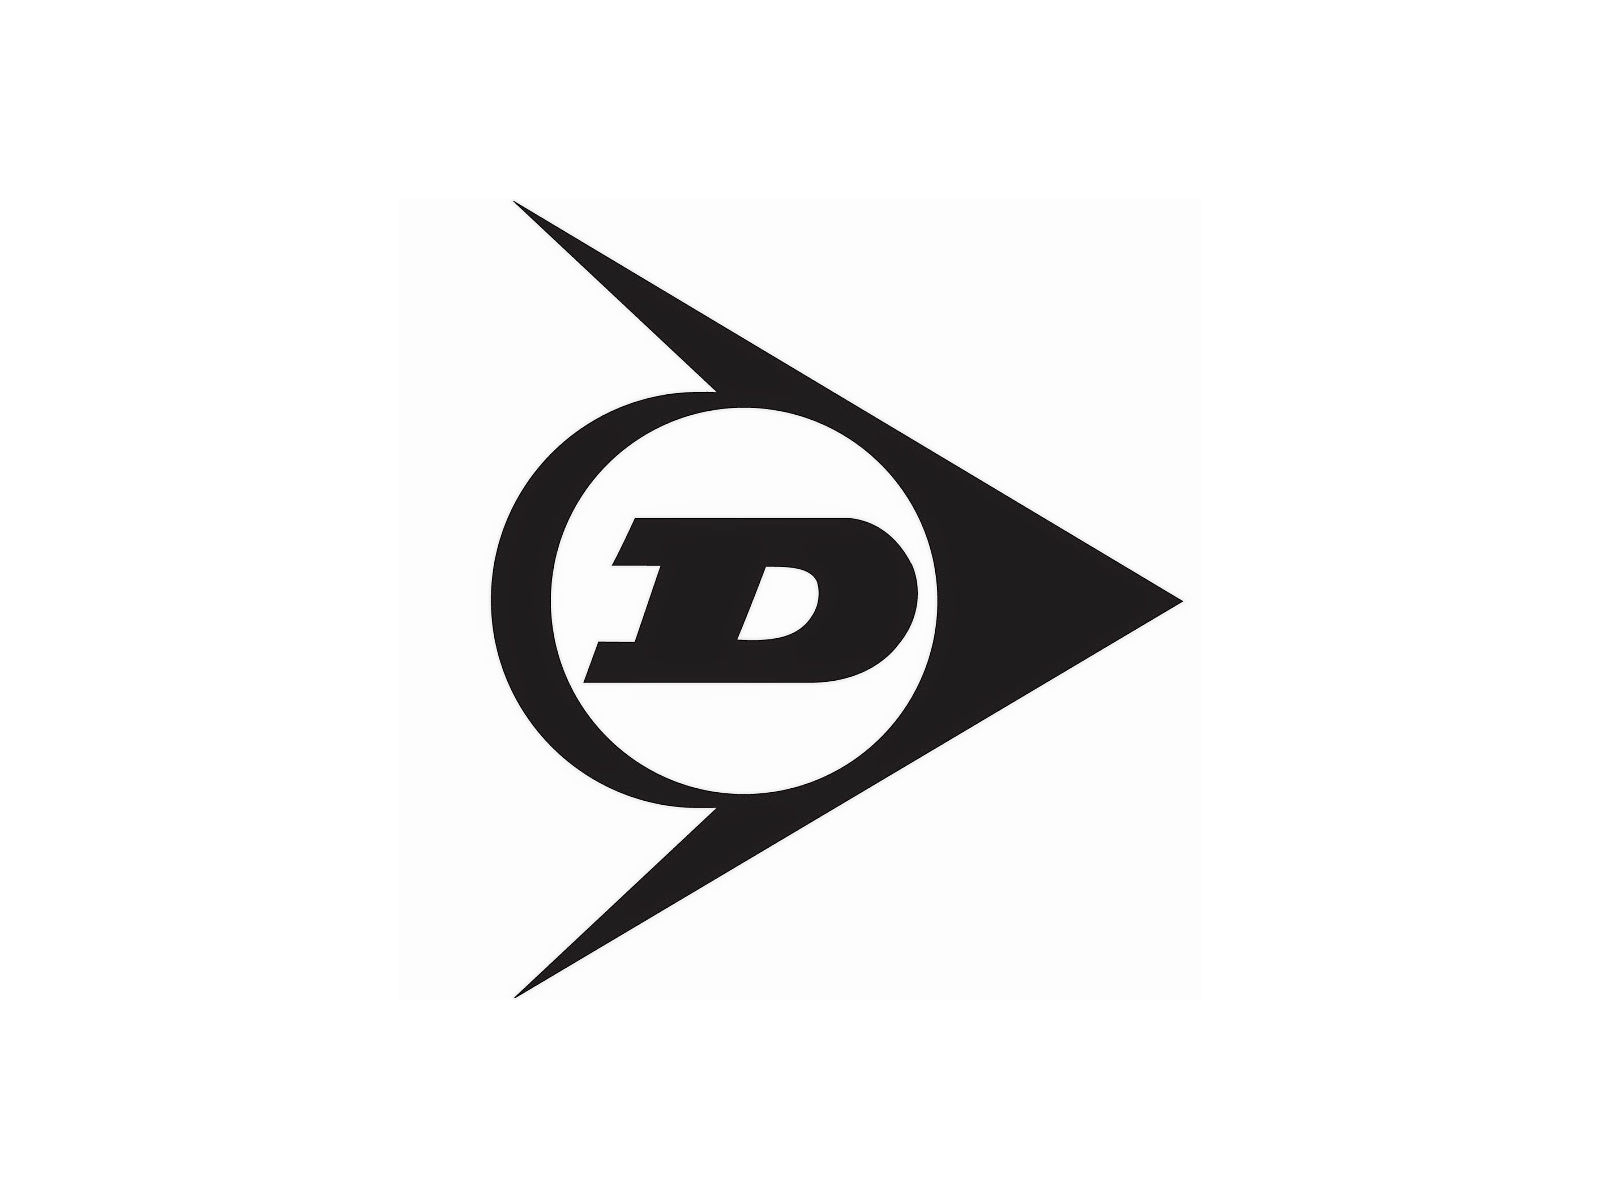 Black D Logo - Dunlop logo | Logok